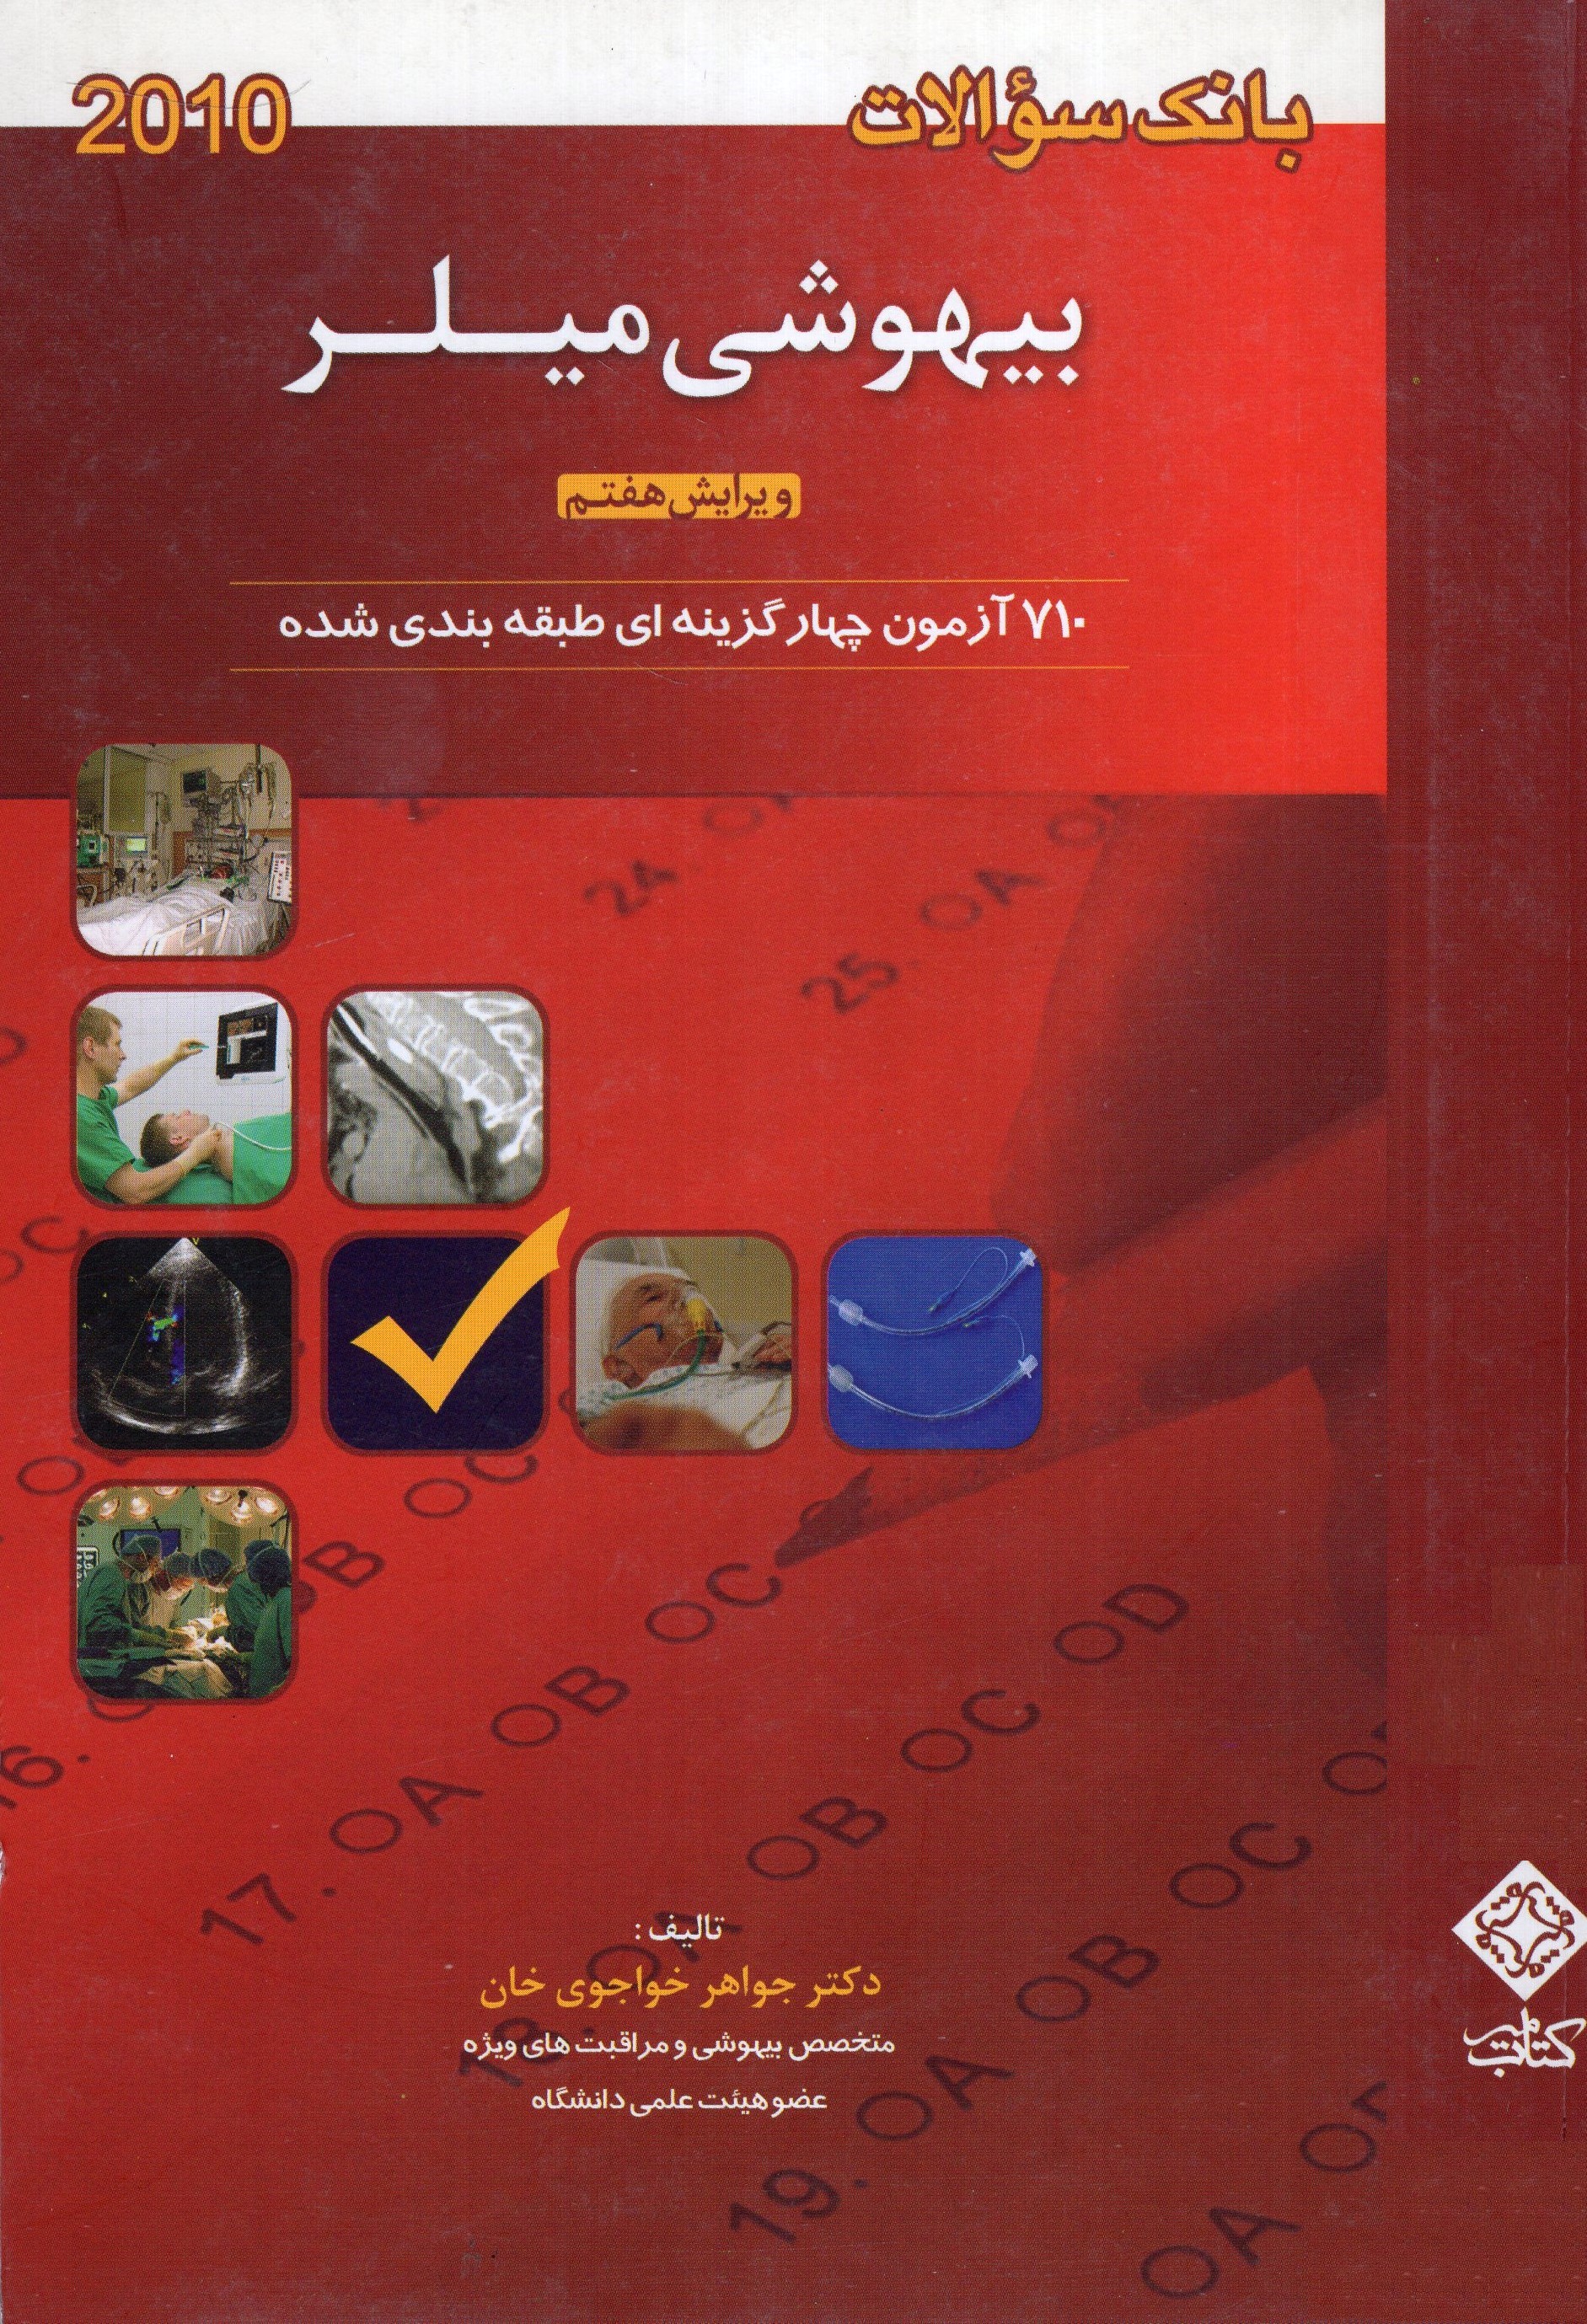 بانک سئوالات بیهوشی میلر 2010 خواجوی خان(کتاب میر)